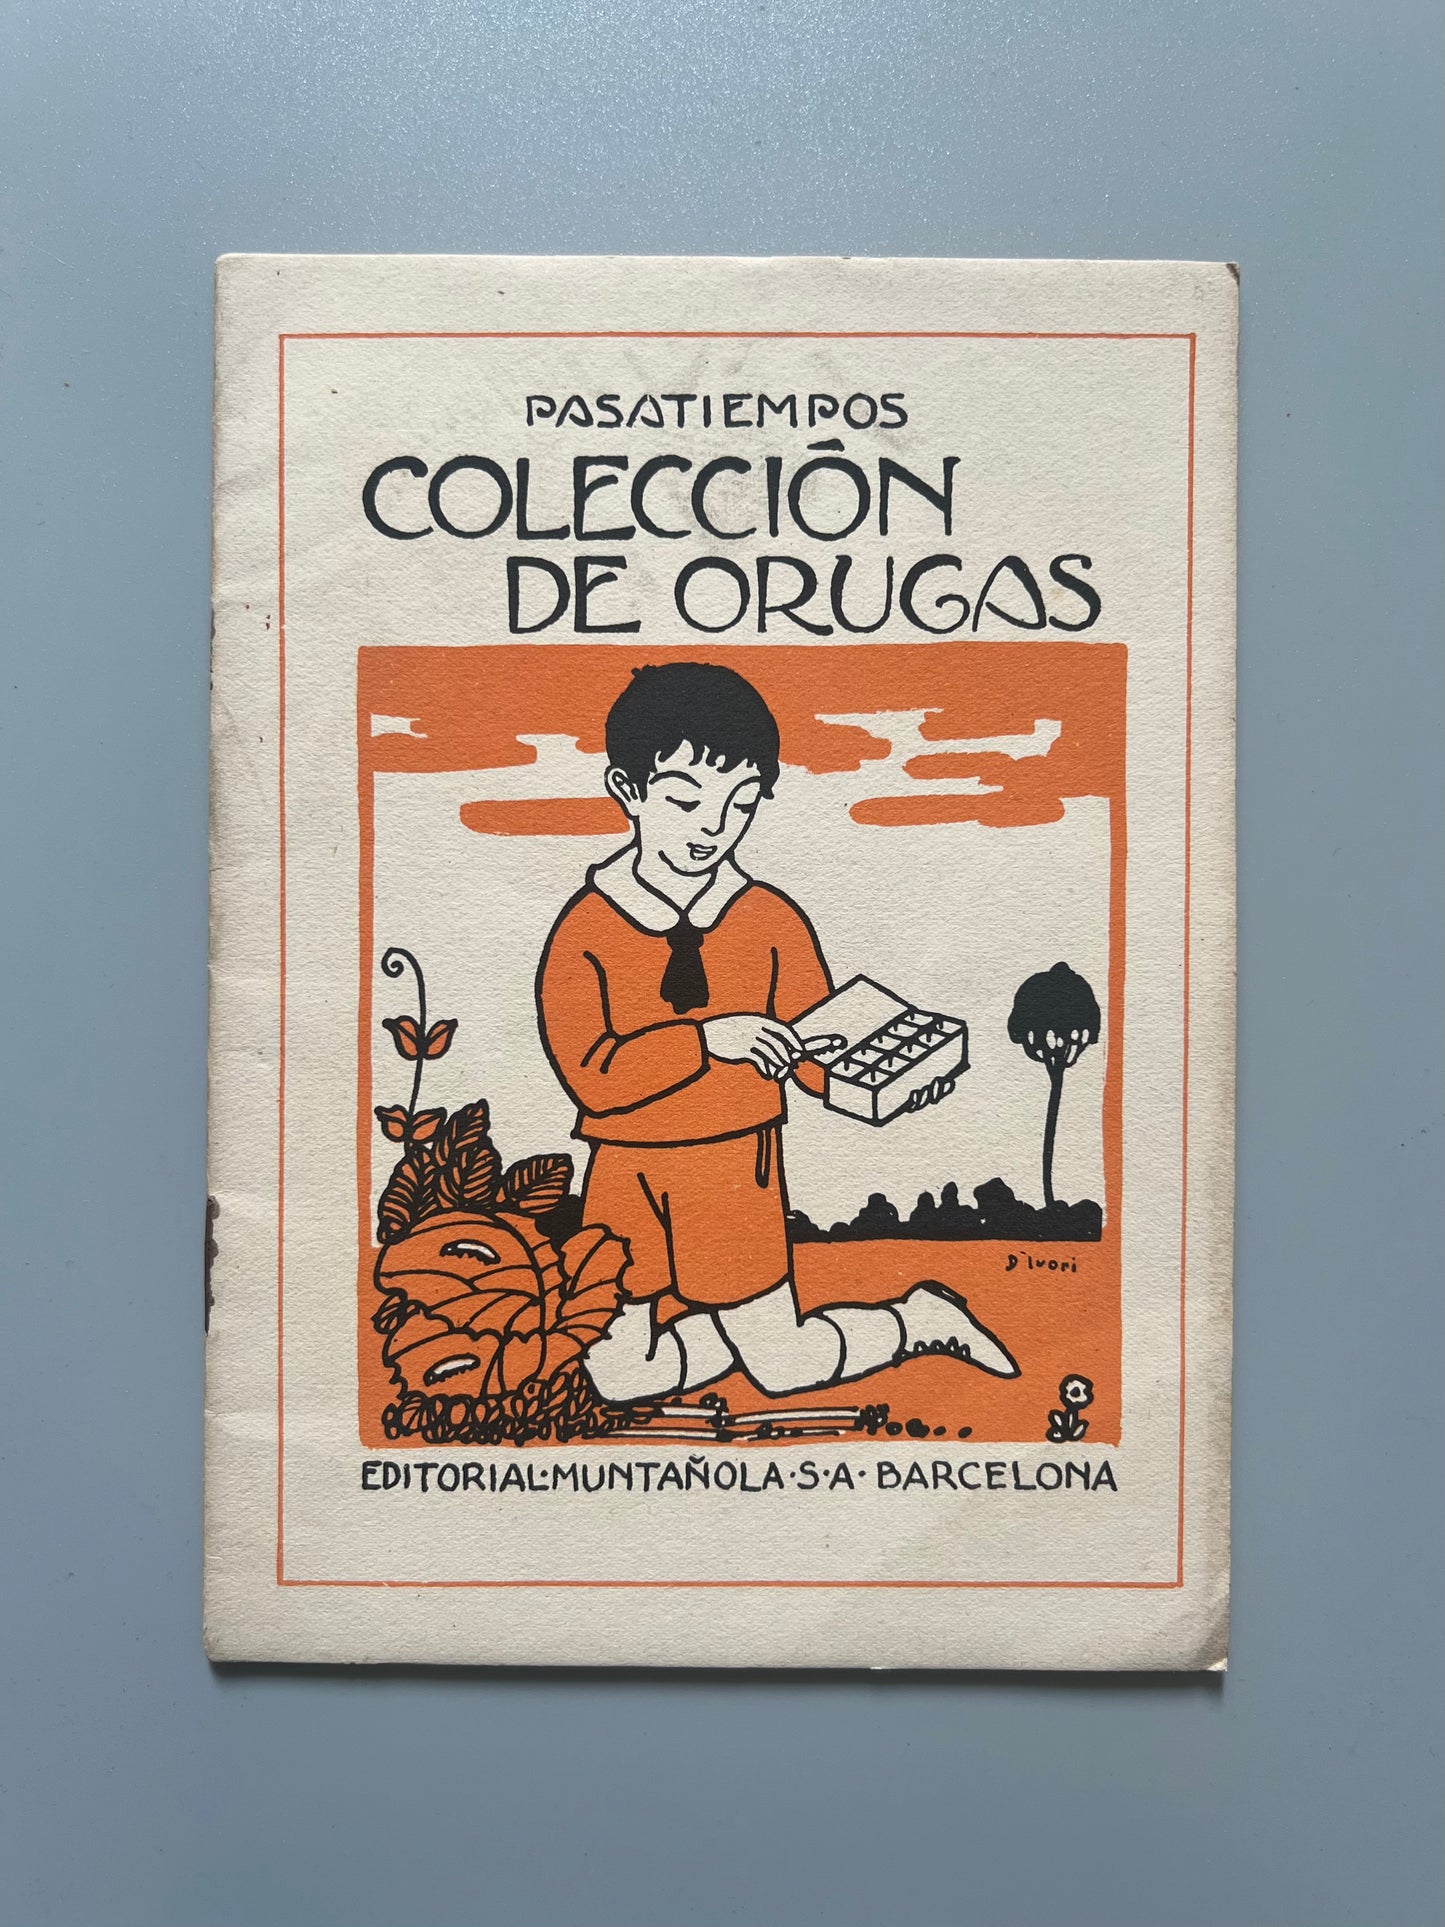 Colección de orugas. Pasatiempos - Editorial Muntañola, ca. 1930